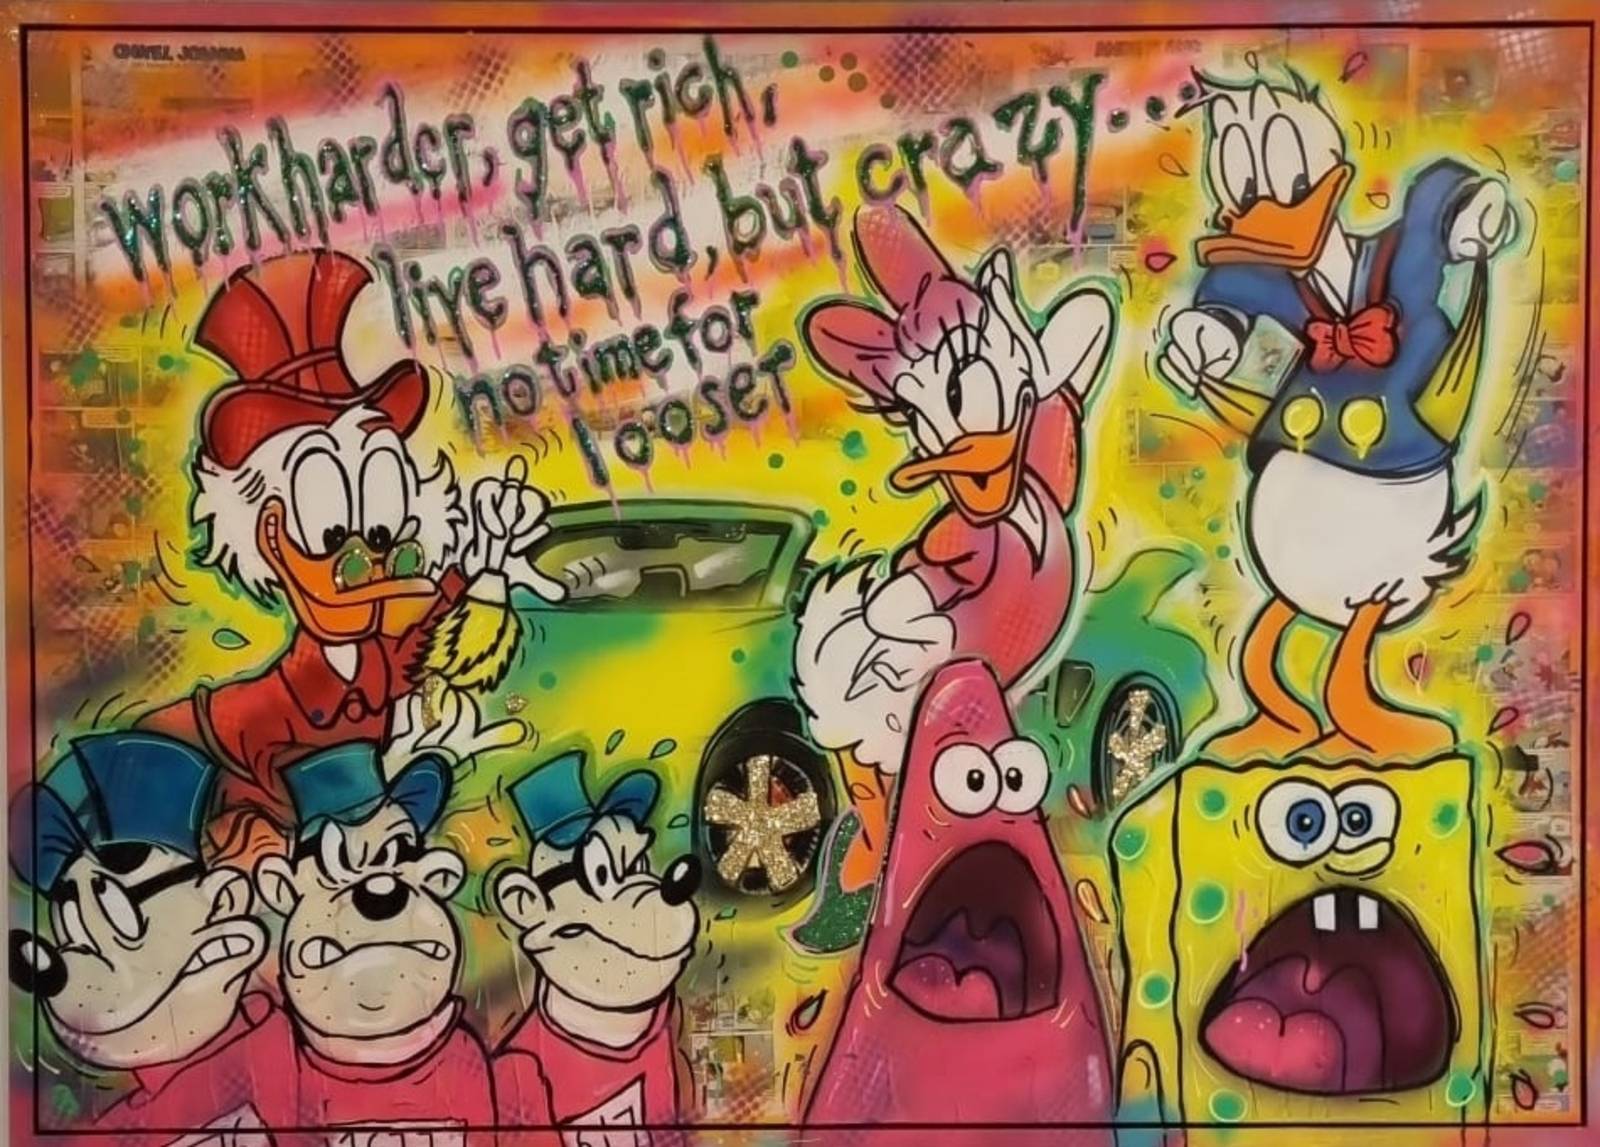 Ein Popart-Bild mit den Panzerknackern, Donald und Daisy Duck, Spongebob und anderen Figuren.